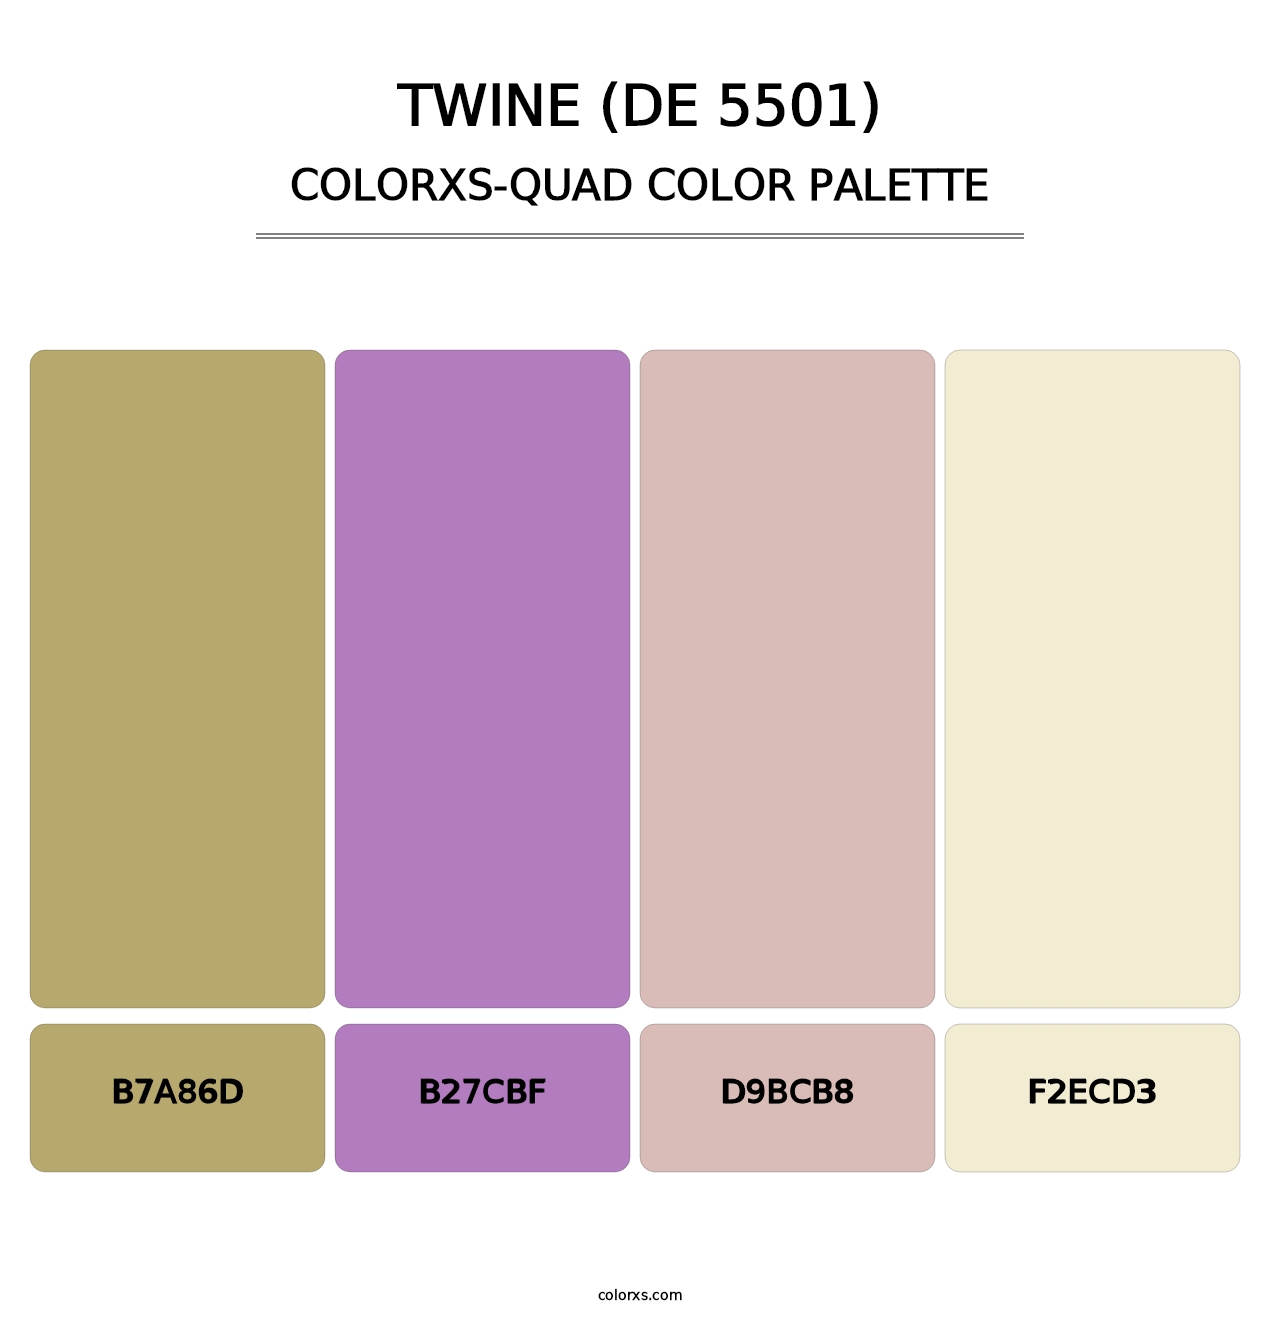 Twine (DE 5501) - Colorxs Quad Palette